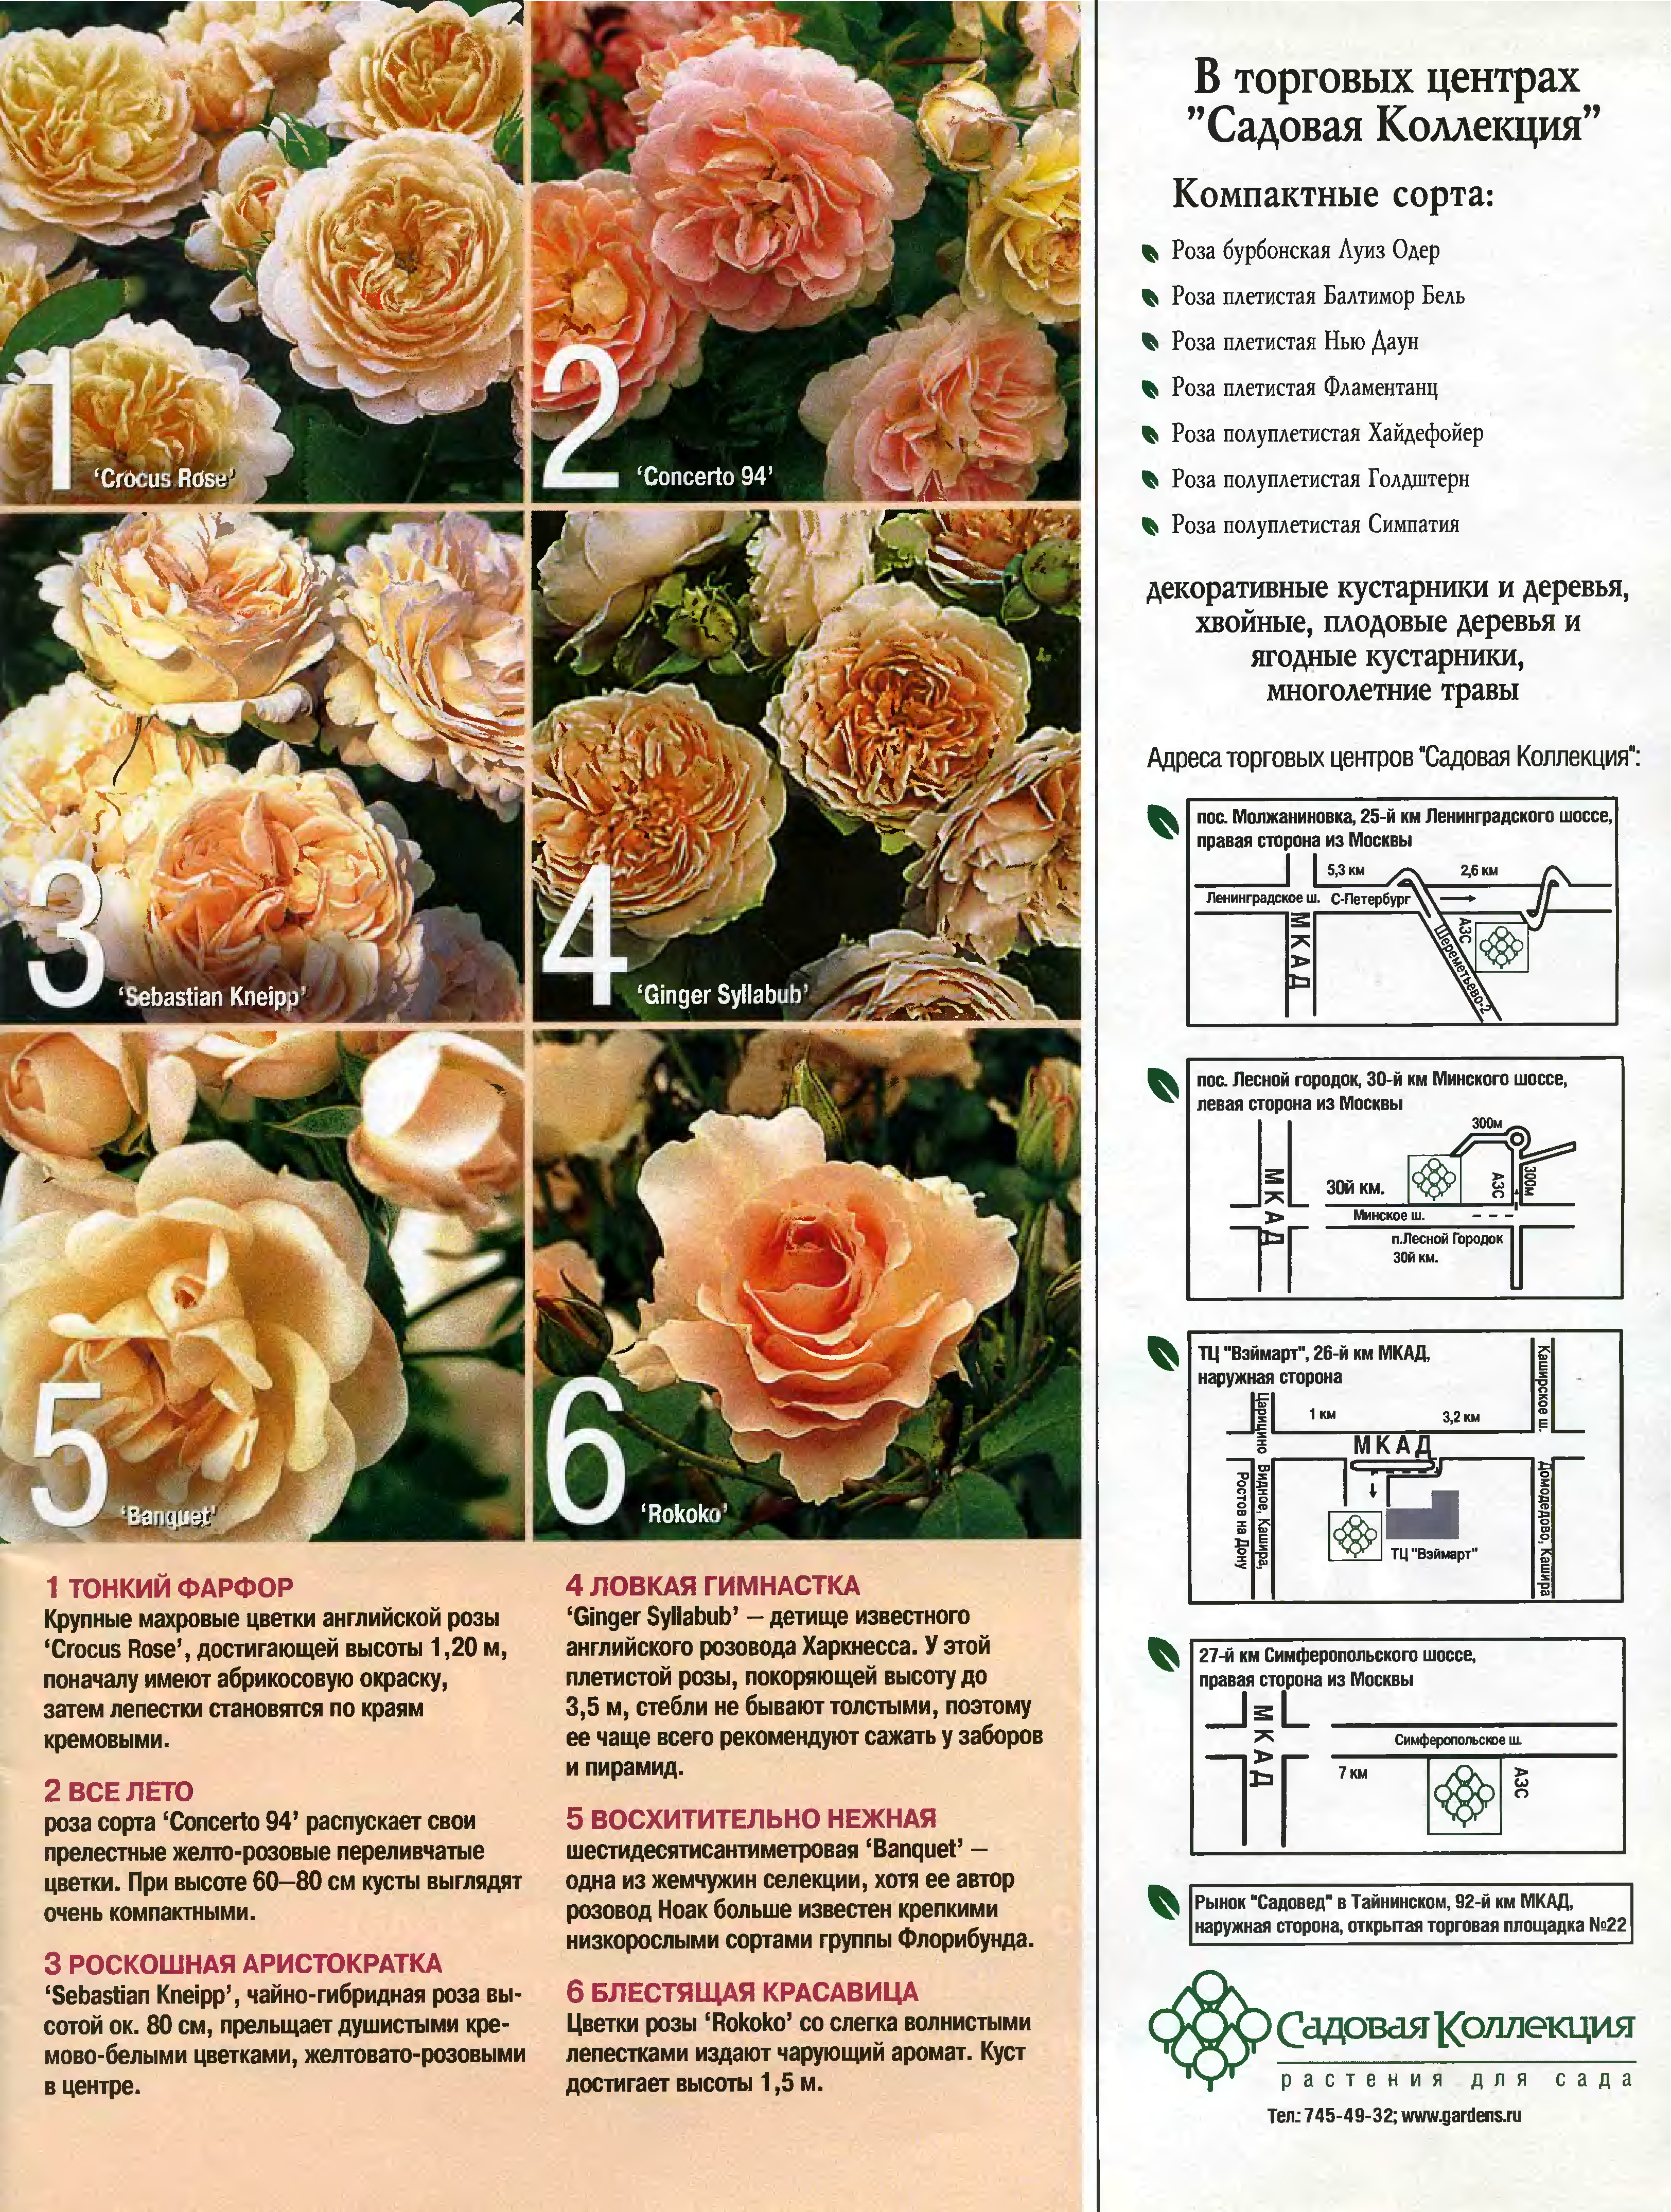 Великолепные розы-шрабы: фото и описание, применение в дизайне сада